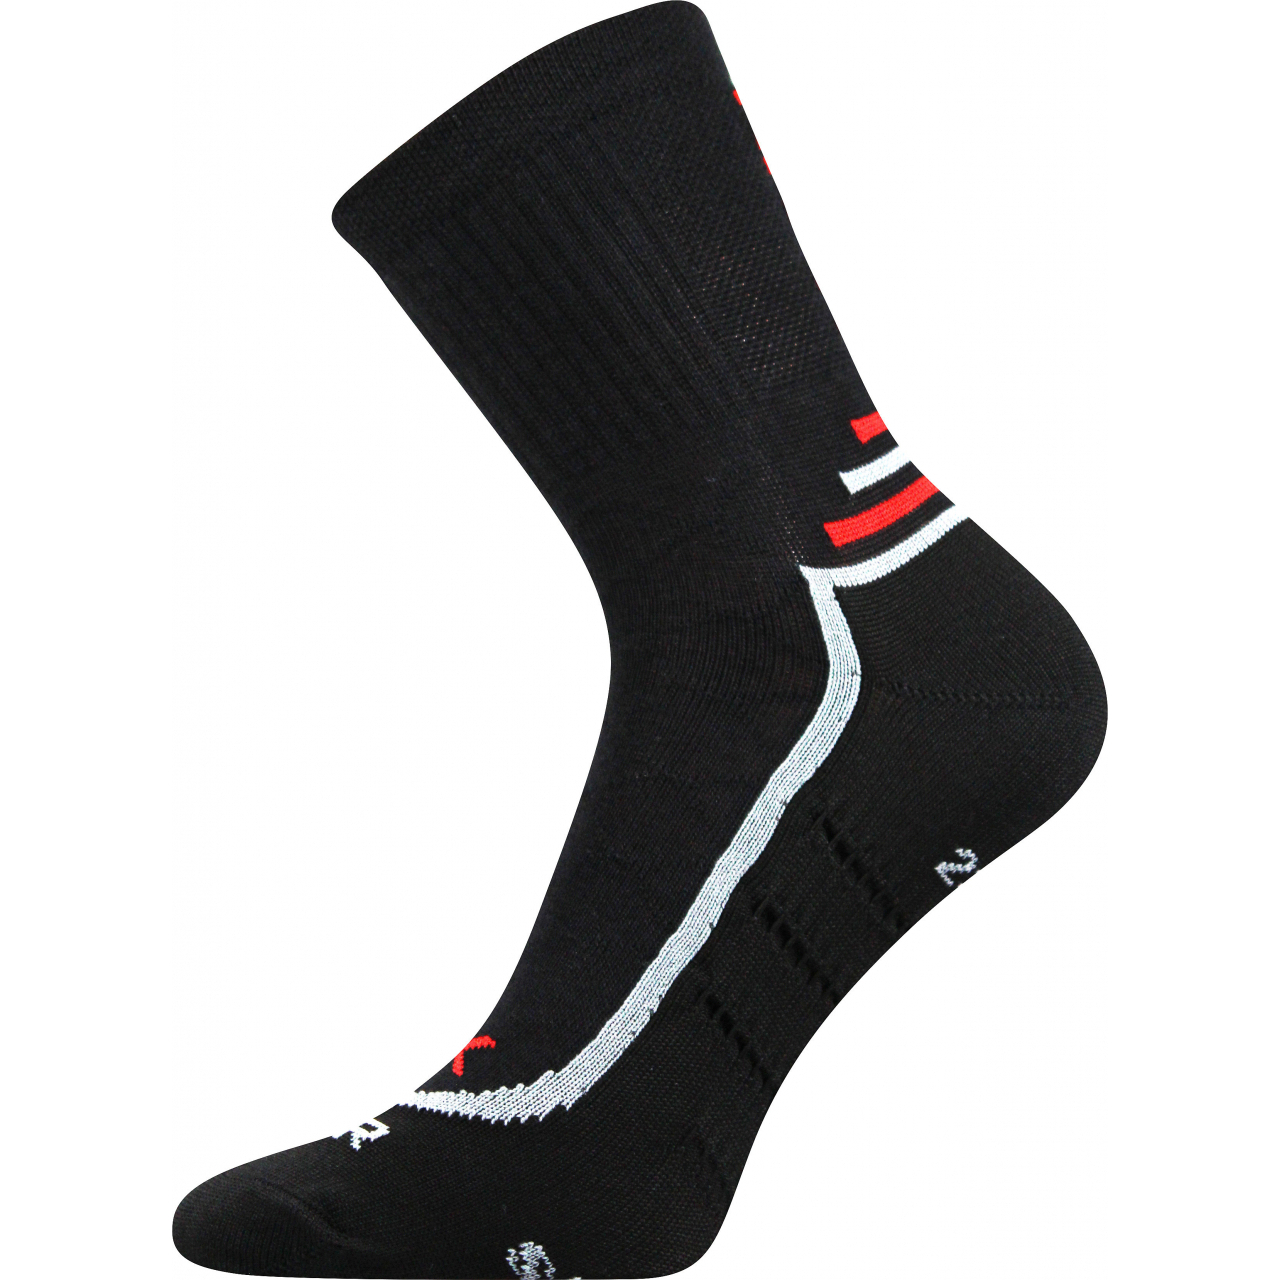 Ponožky sportovní unisex Voxx Vertigo - černé, 43-46